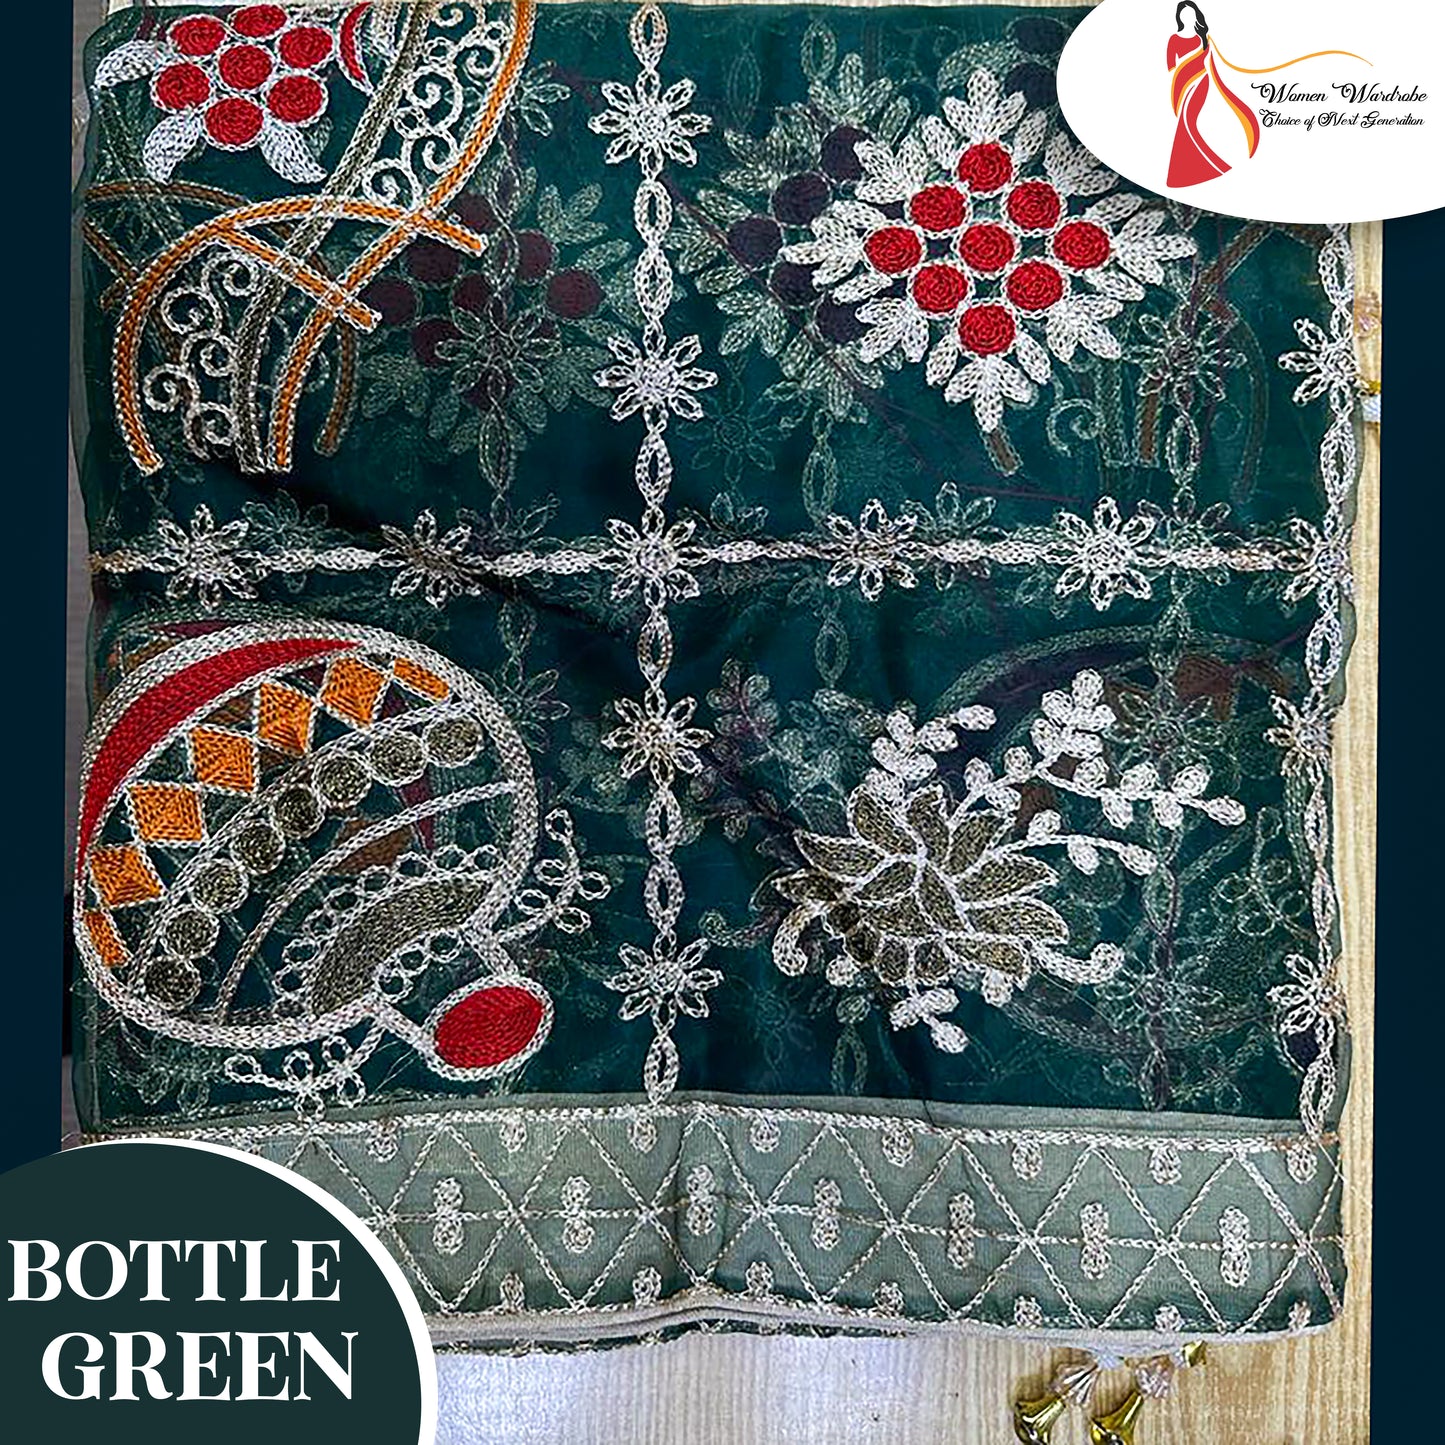 Organza Embroidery Shawl ❤